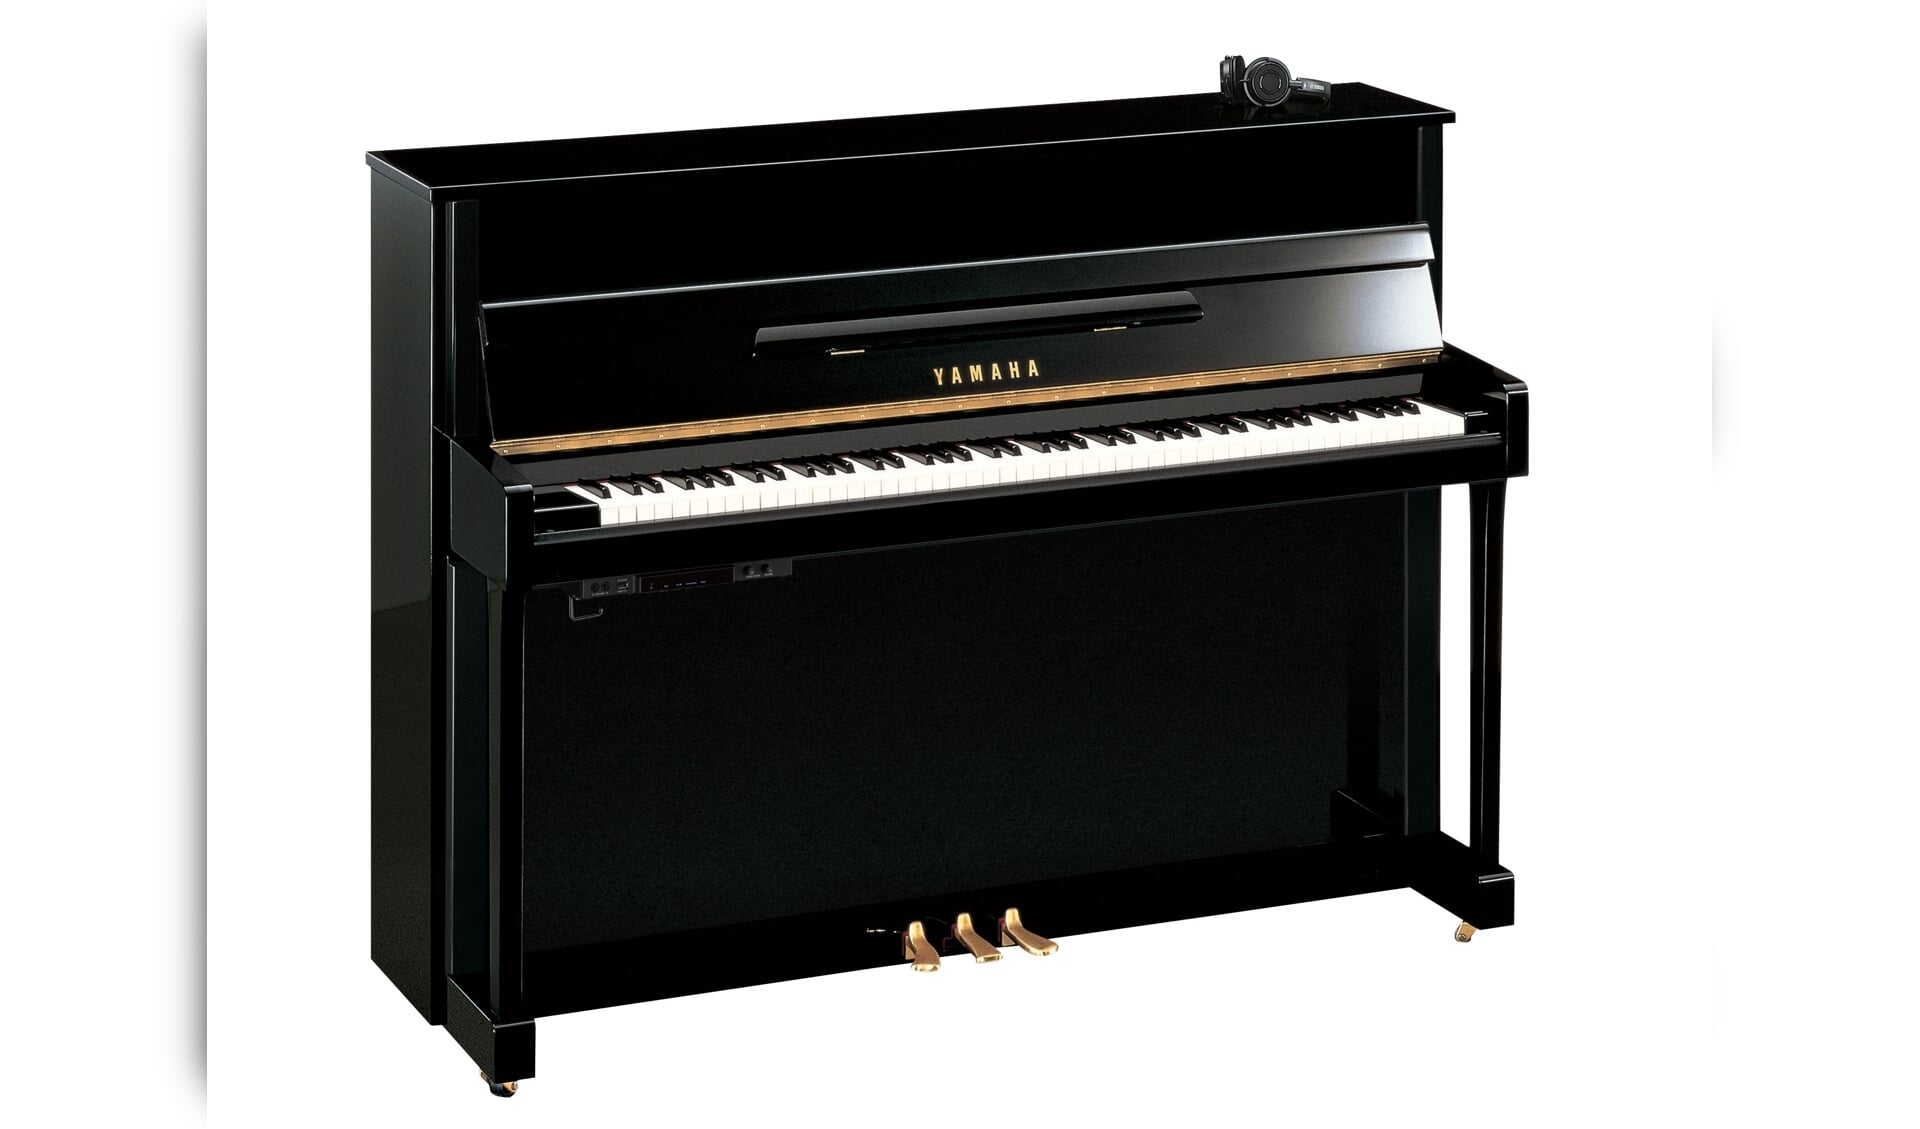 Met een silent piano kunt u ongestoord en niet-storend oefenen